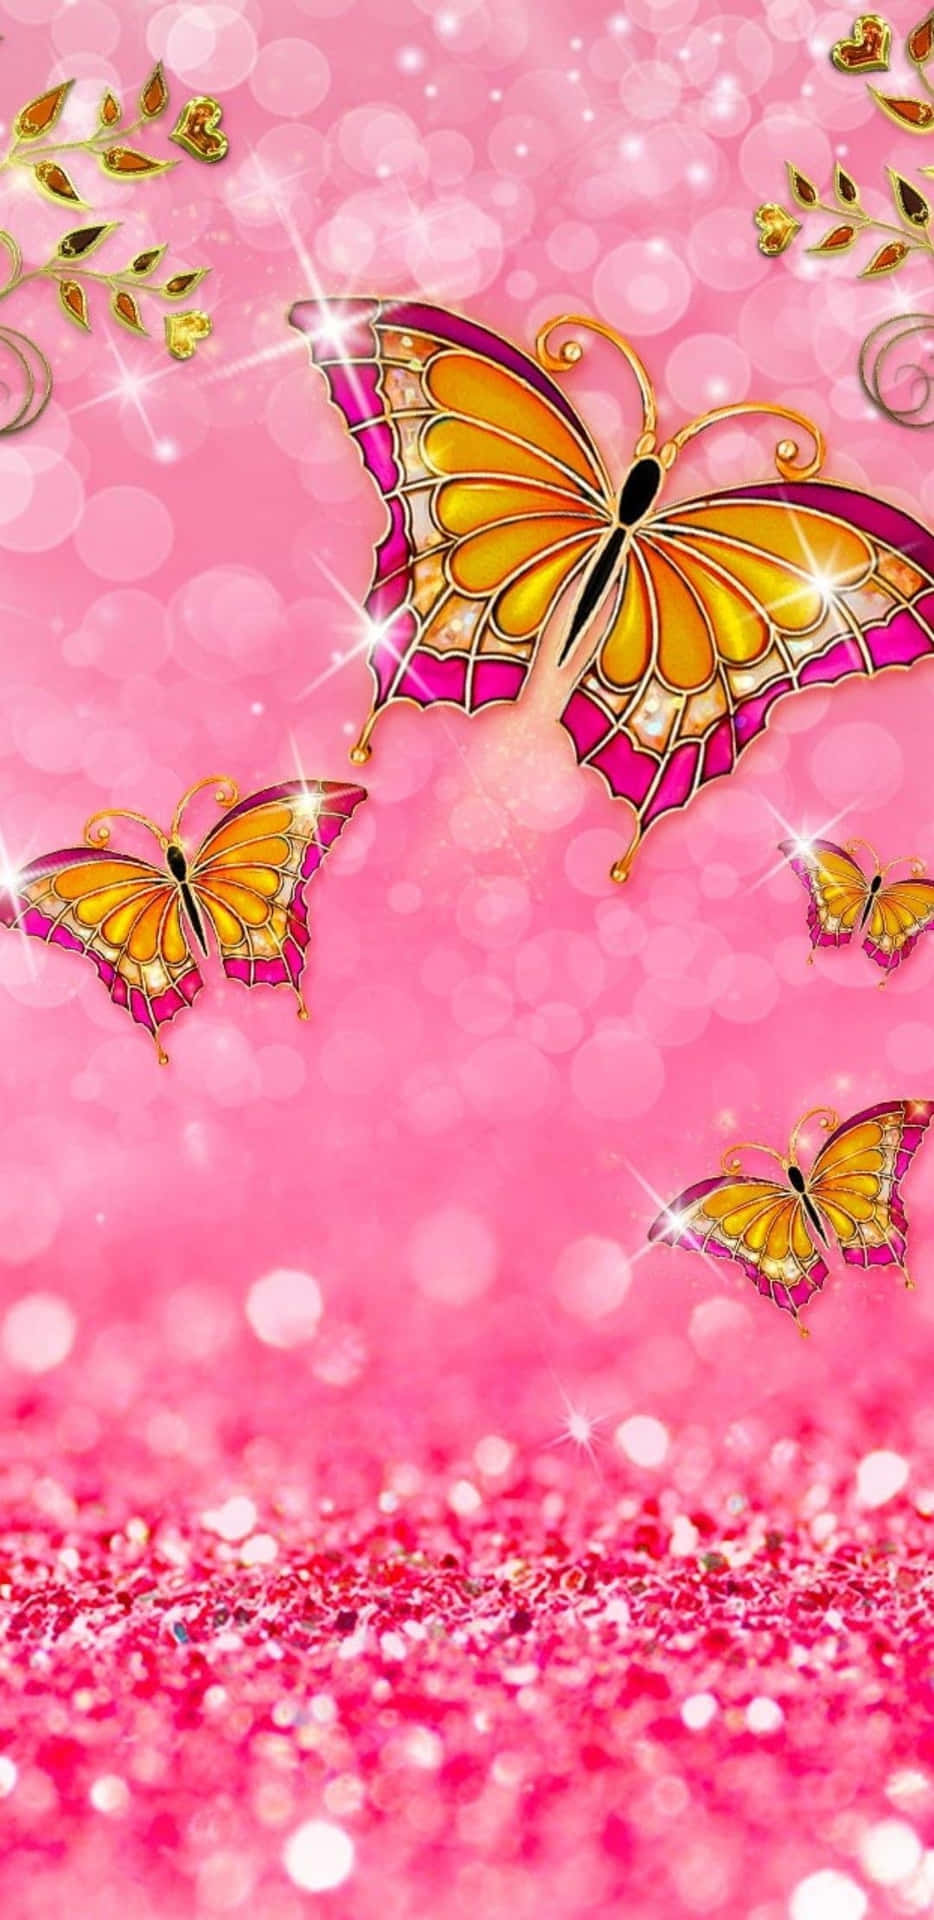 Et søgende sommerfugl ømt indesluttet i glimrende lyserød glimmer Wallpaper